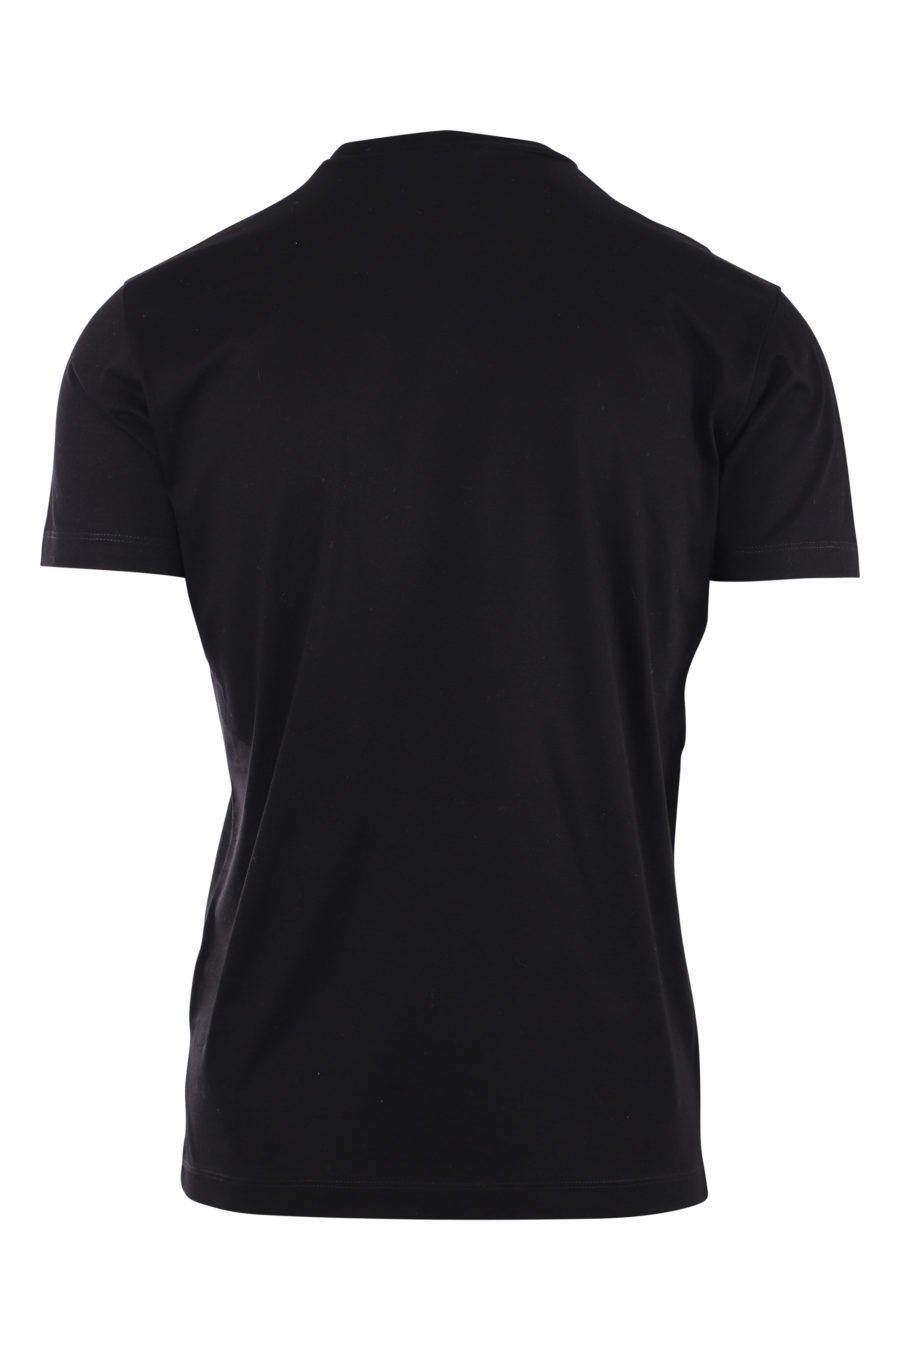 T-shirt noir avec logo planète "globetrotter" - IMG 9722